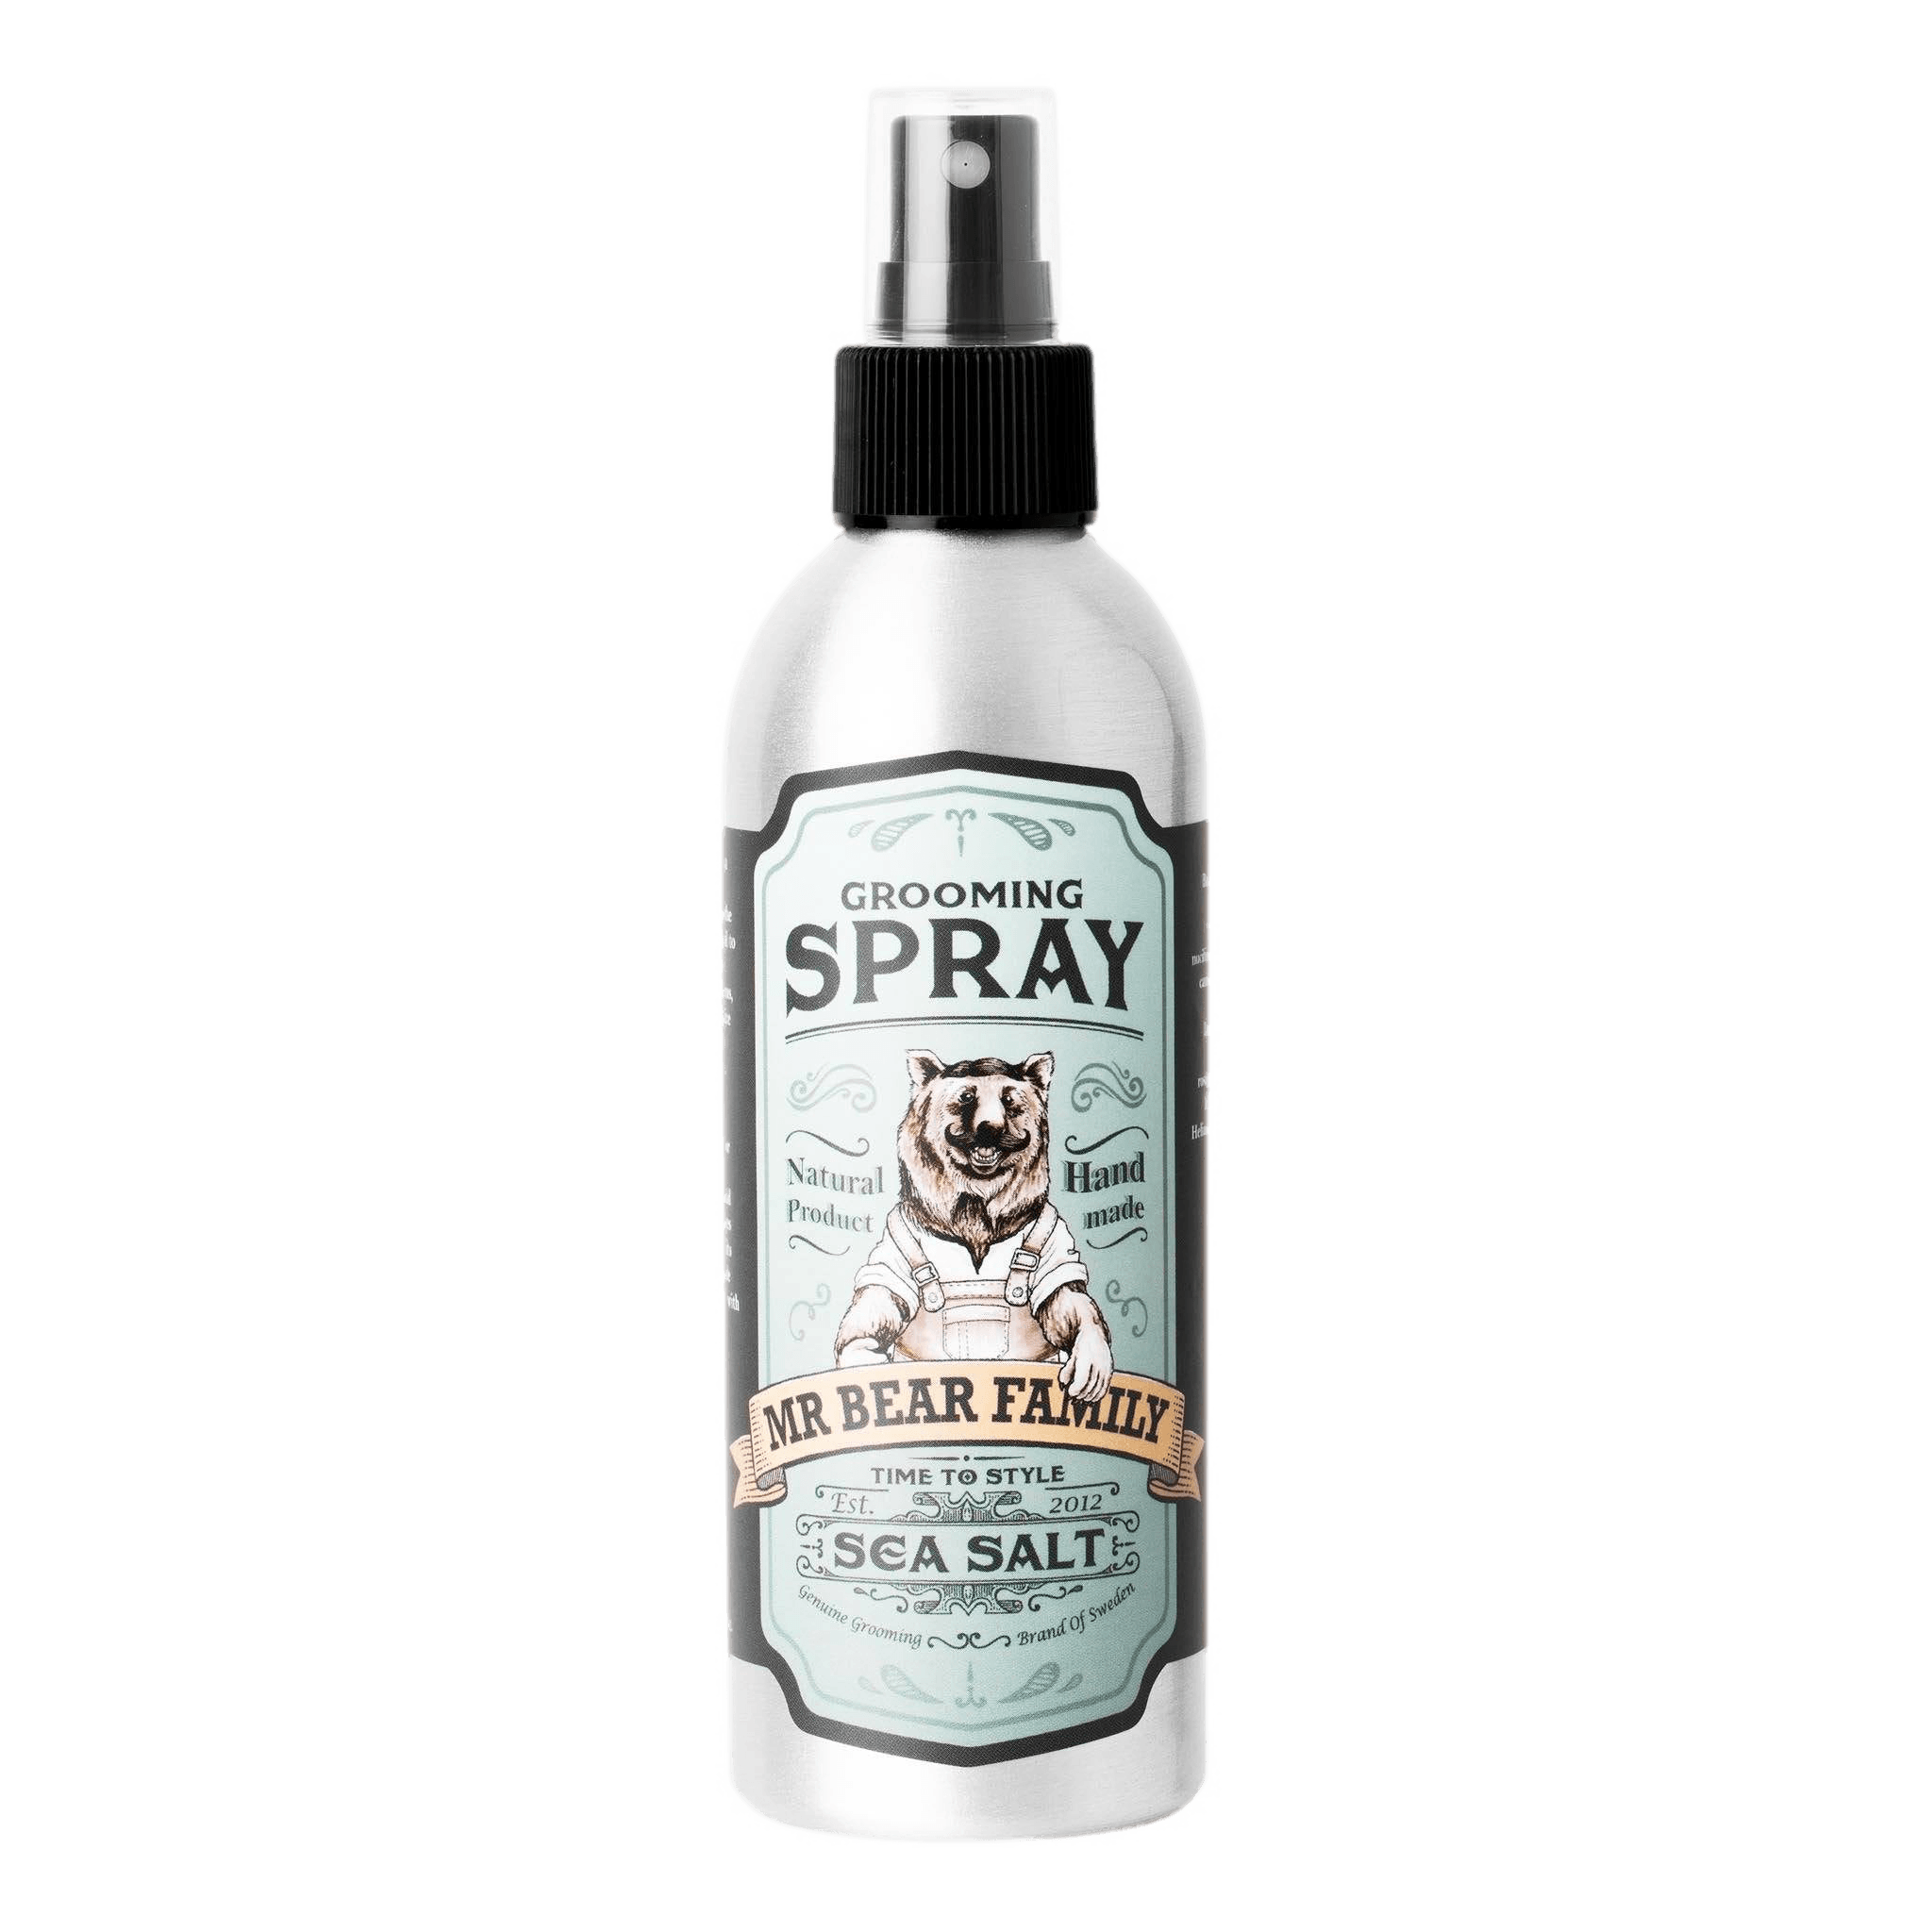 Mr Bear Family Grooming Spray - Sea Salt 200 ml